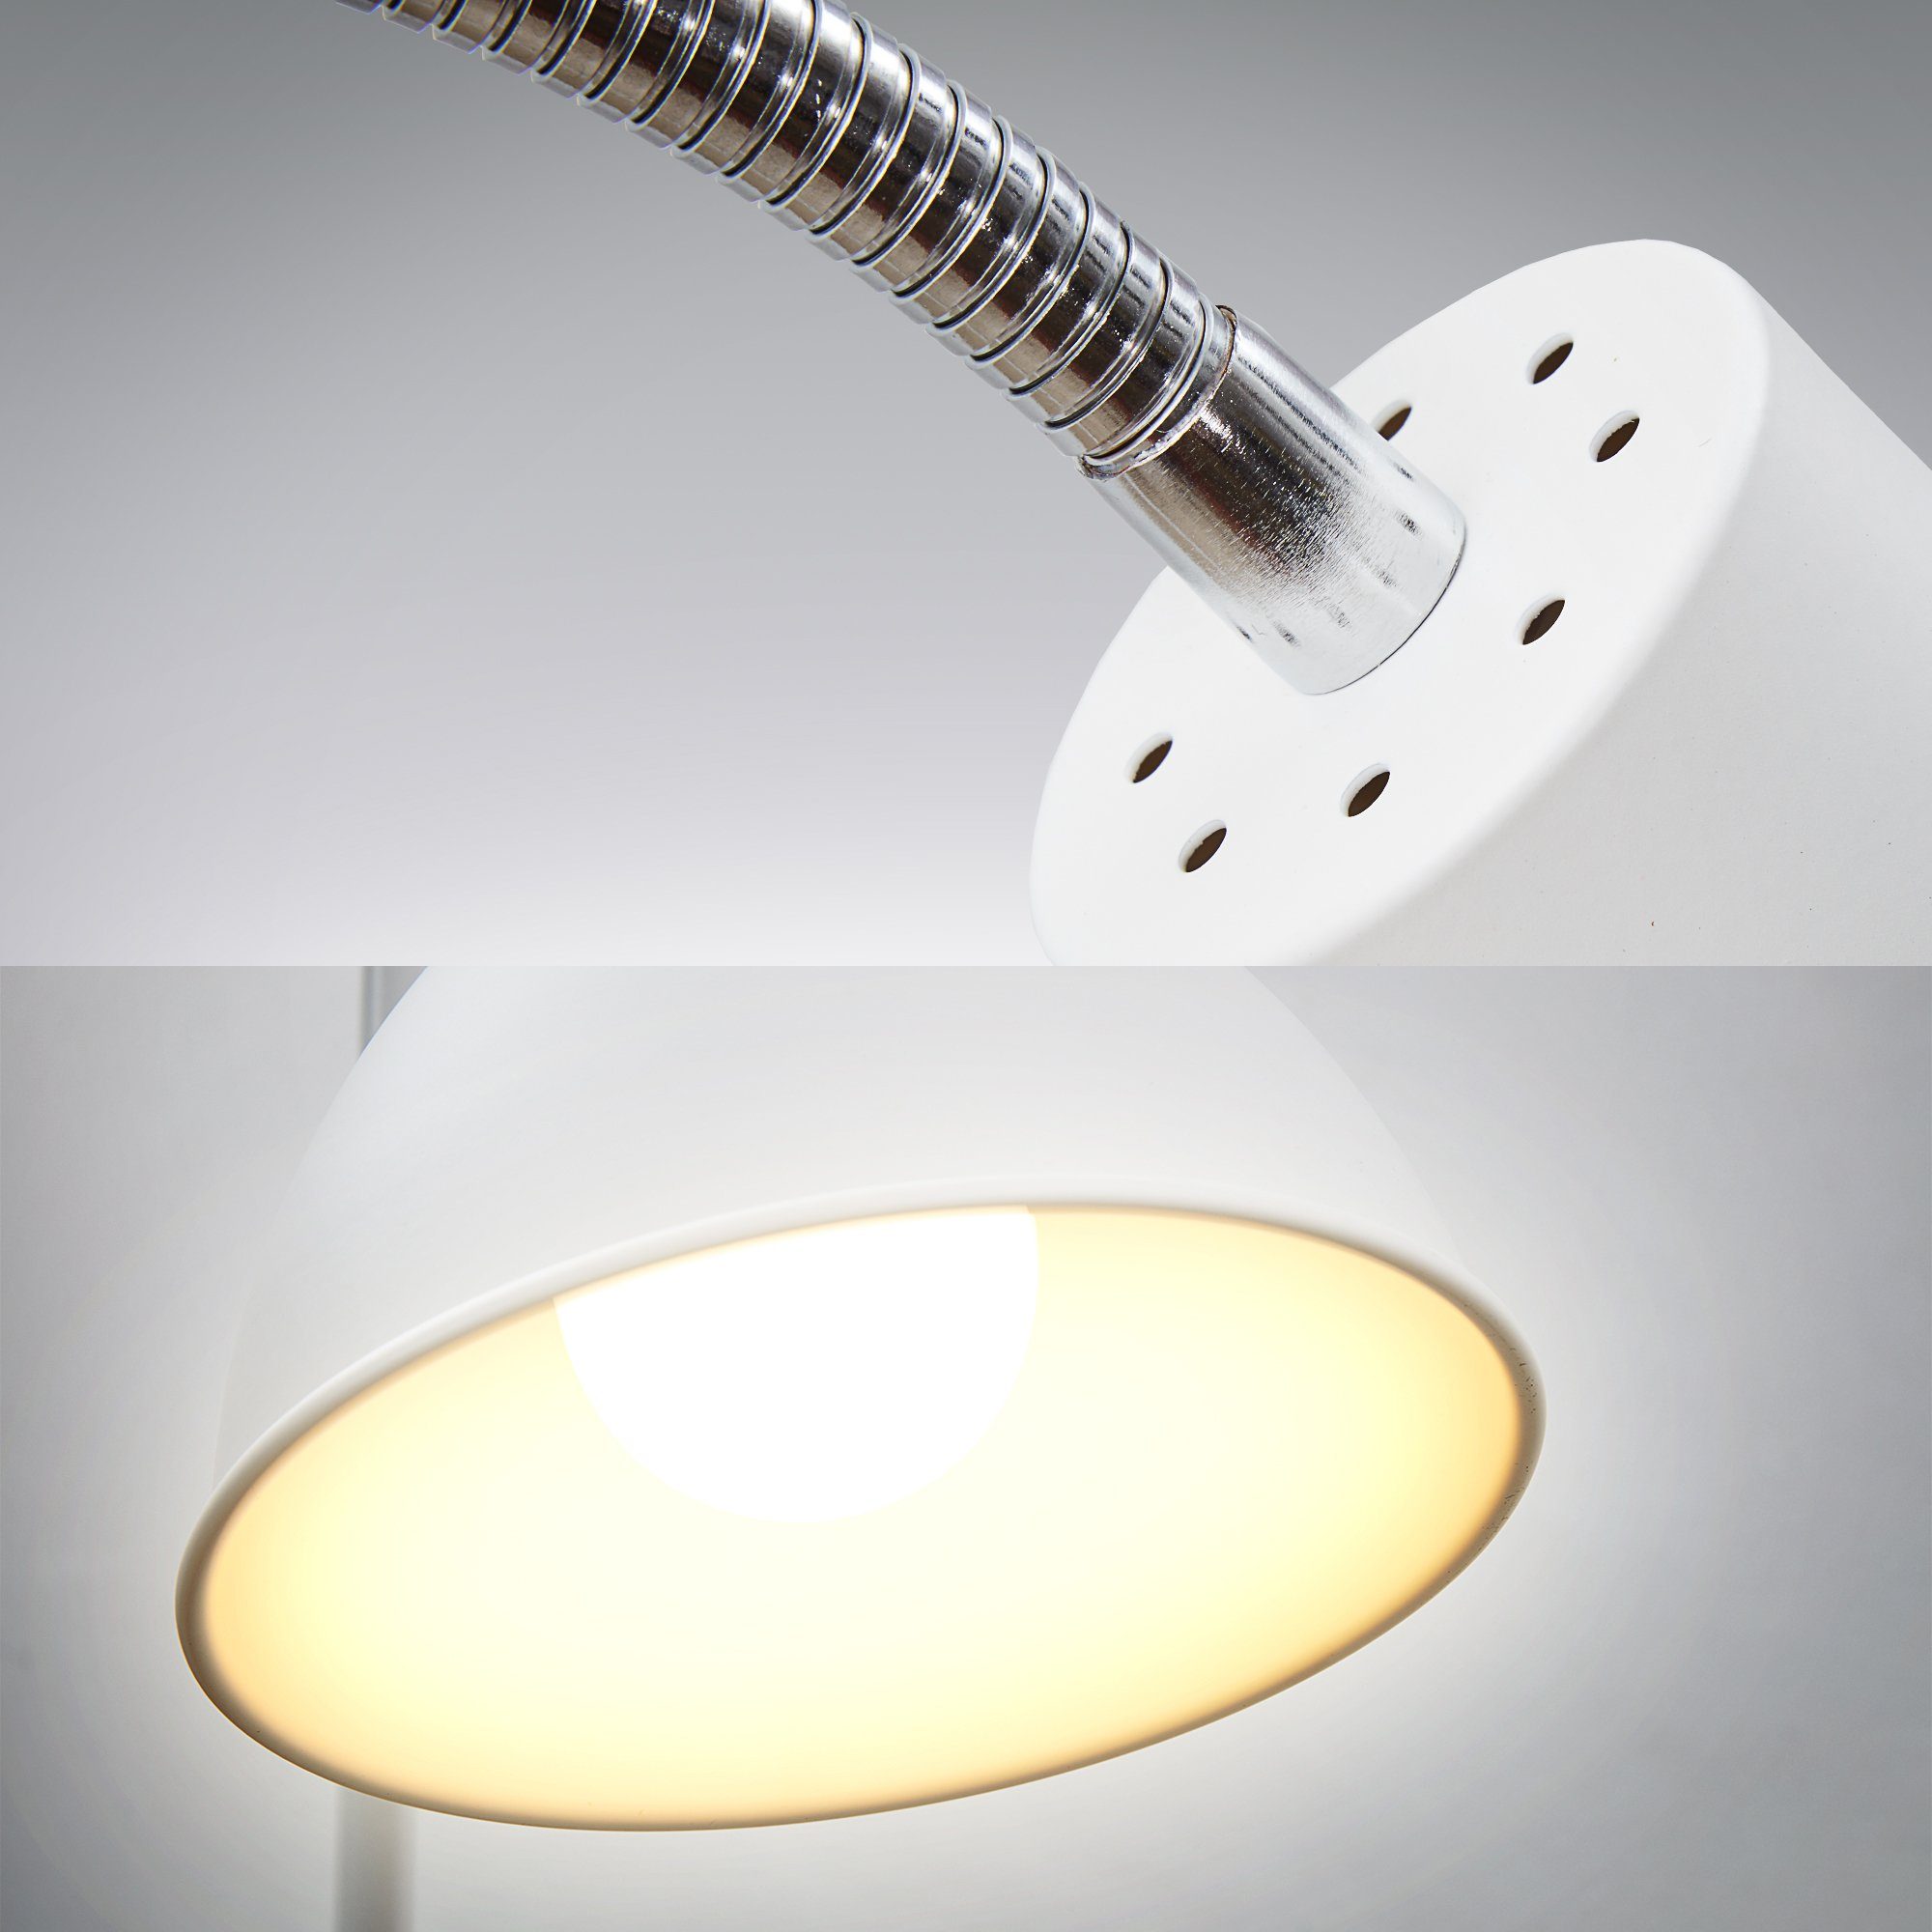 B.K.Licht LED Stehlampe, Warmweiß, Leuchtmittel, Design E27 Industrial ohne Metall schwenkbar Stand-Leuchte Stehleuchte weiß